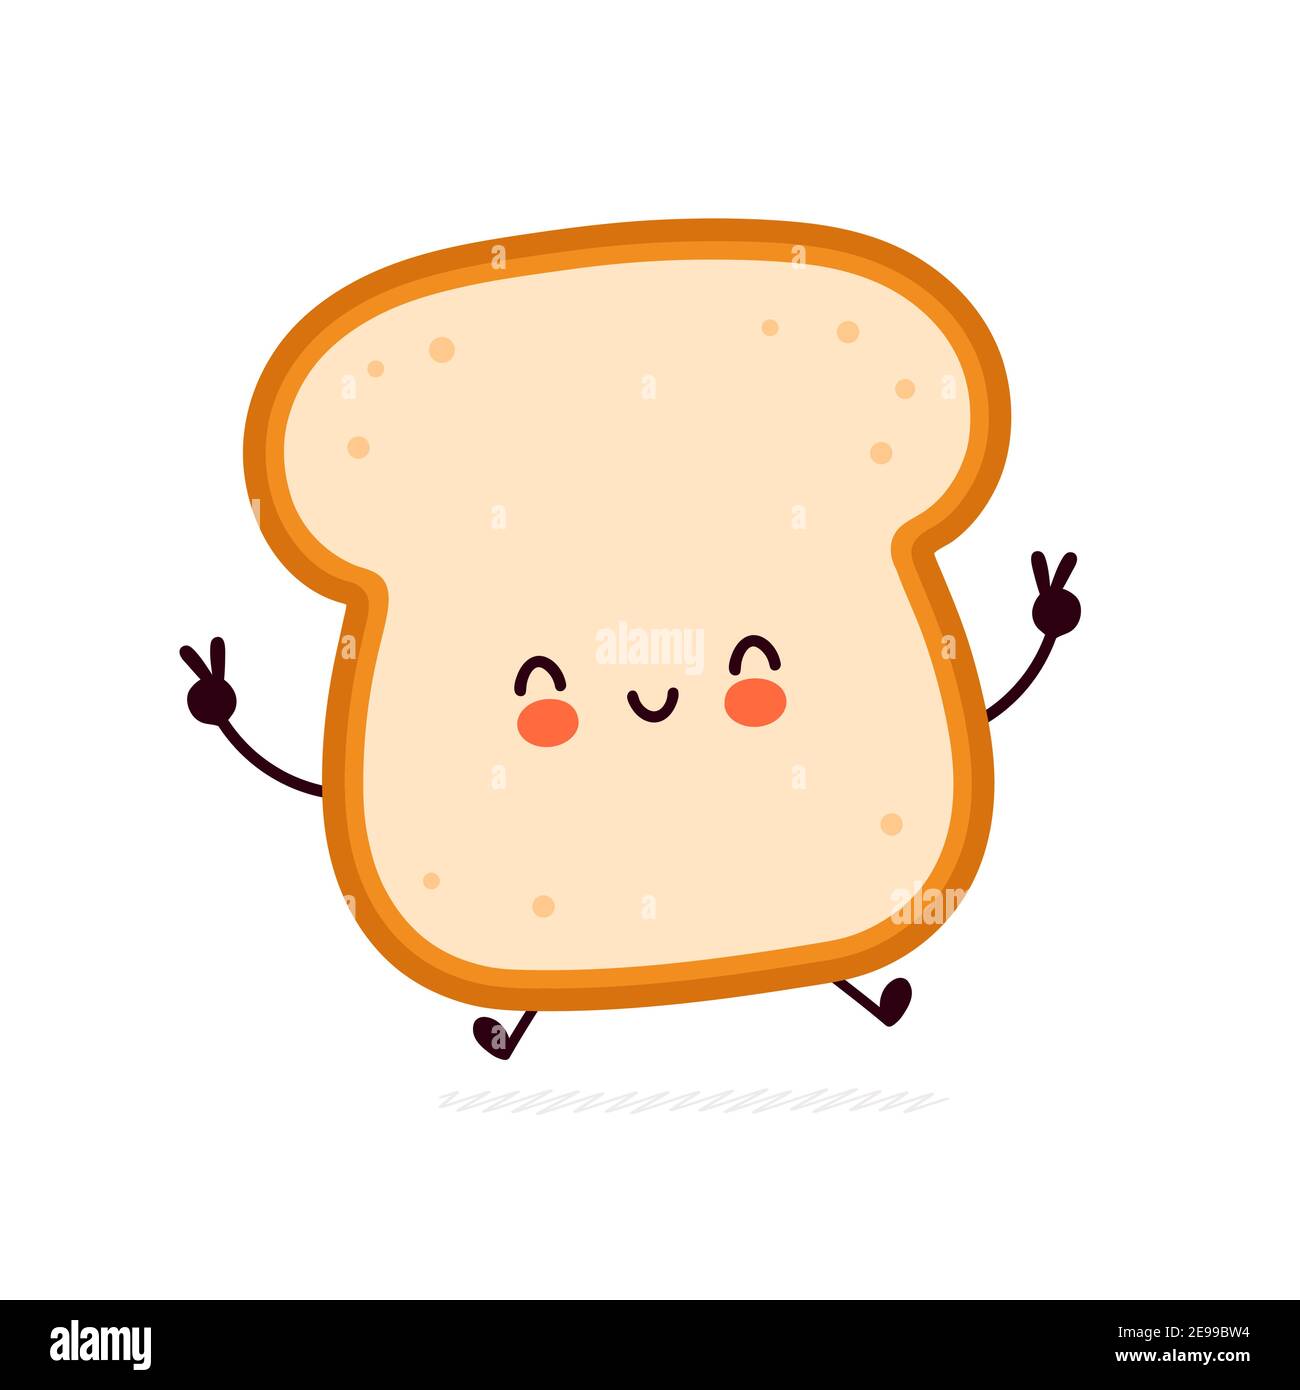 Carino divertente pane toast carattere. Icona di illustrazione del carattere kawaii della cartoon vettoriale a linea piatta. Isolato su sfondo bianco. Toast con concetto di mascotte del carattere del viso Illustrazione Vettoriale